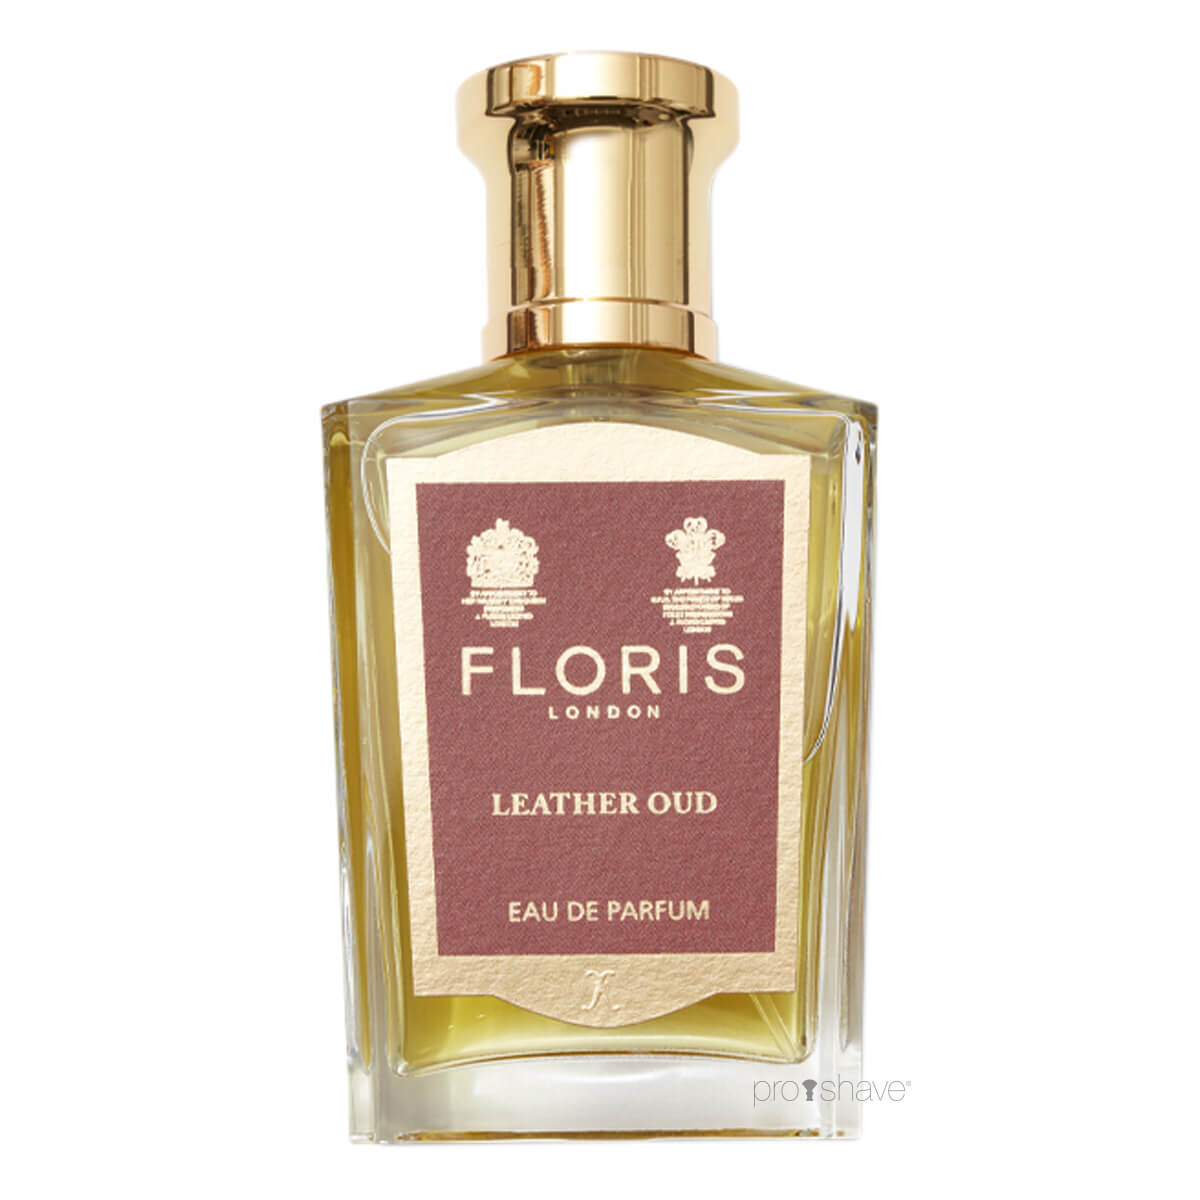 Billede af Floris Leather Oud, Eau de Parfum, 50 ml.